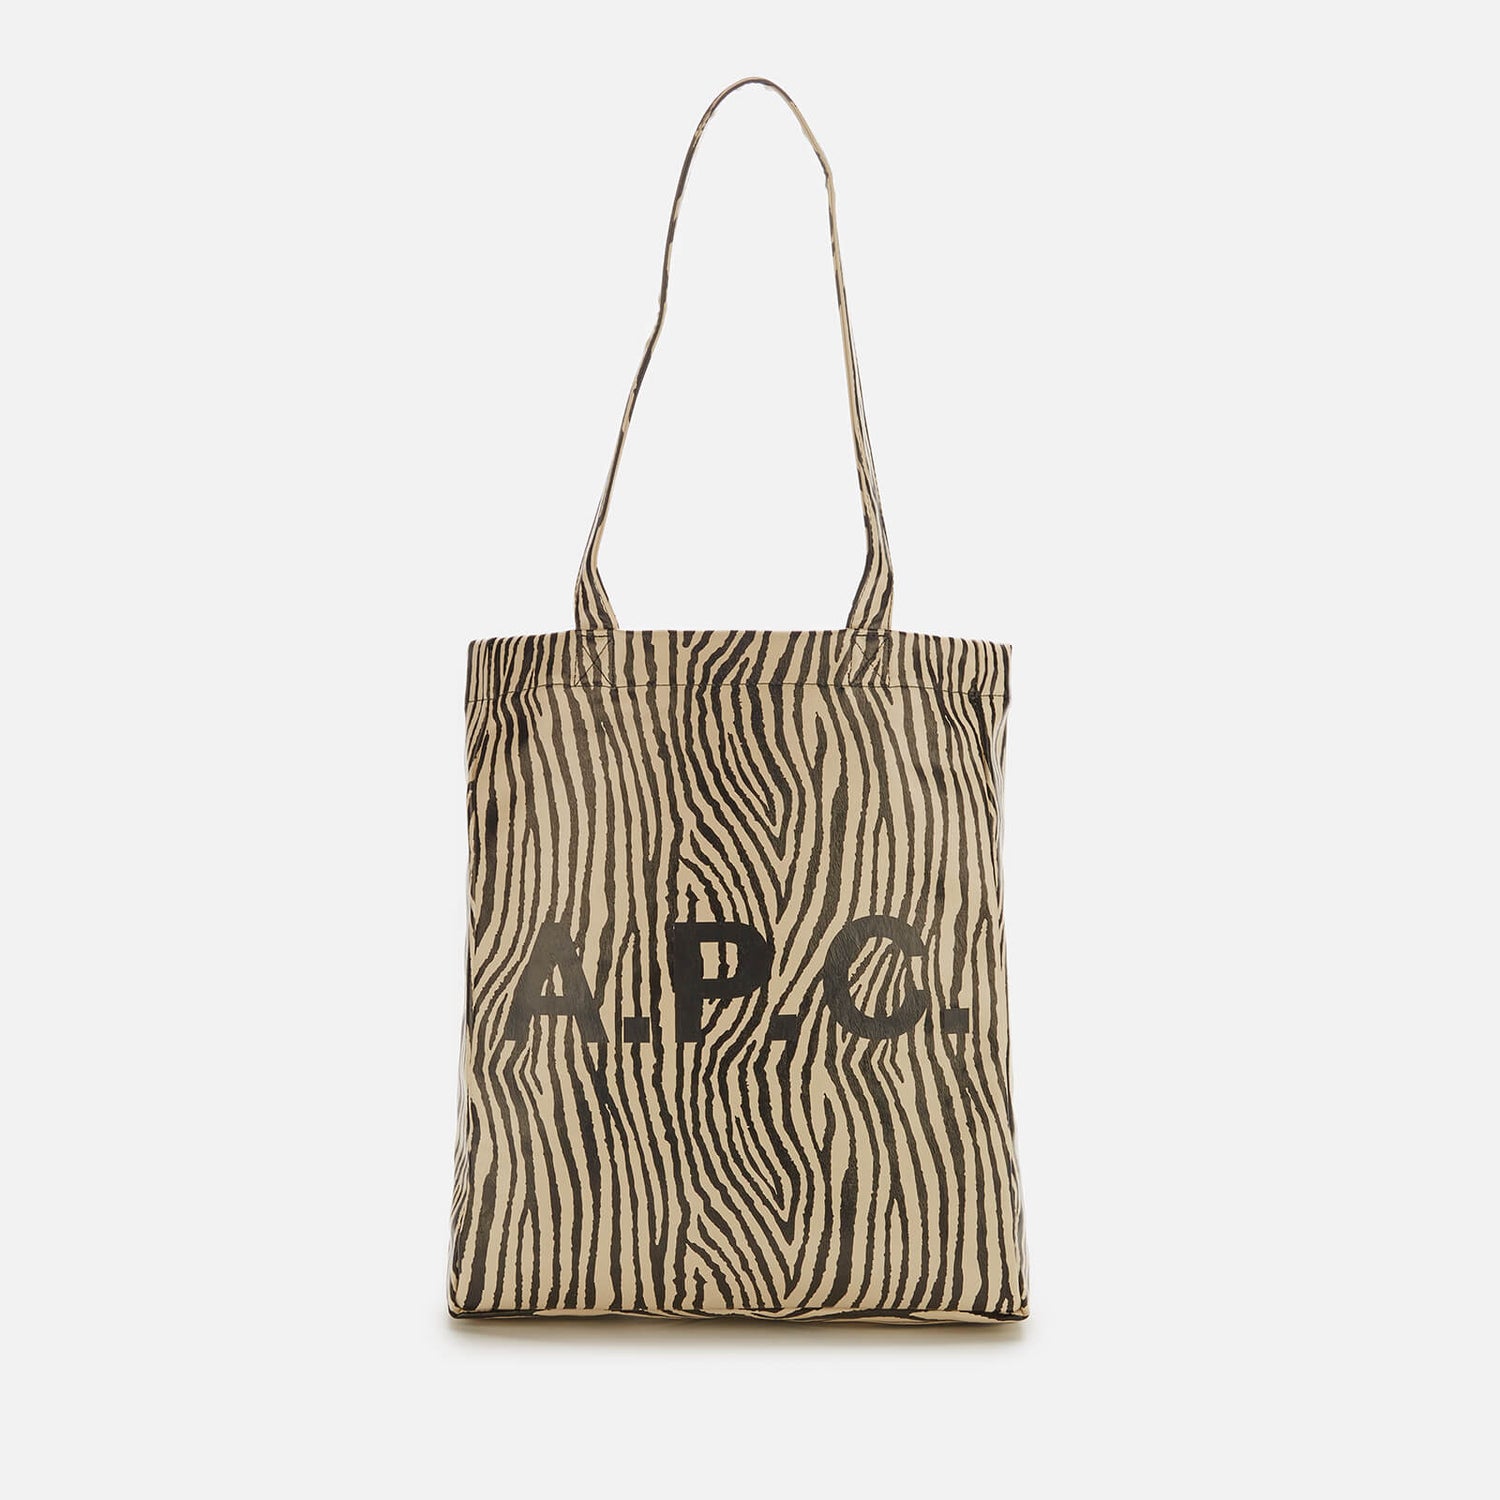 A.P.C. Women's Lou Zebra Tote Bag - Bicolore